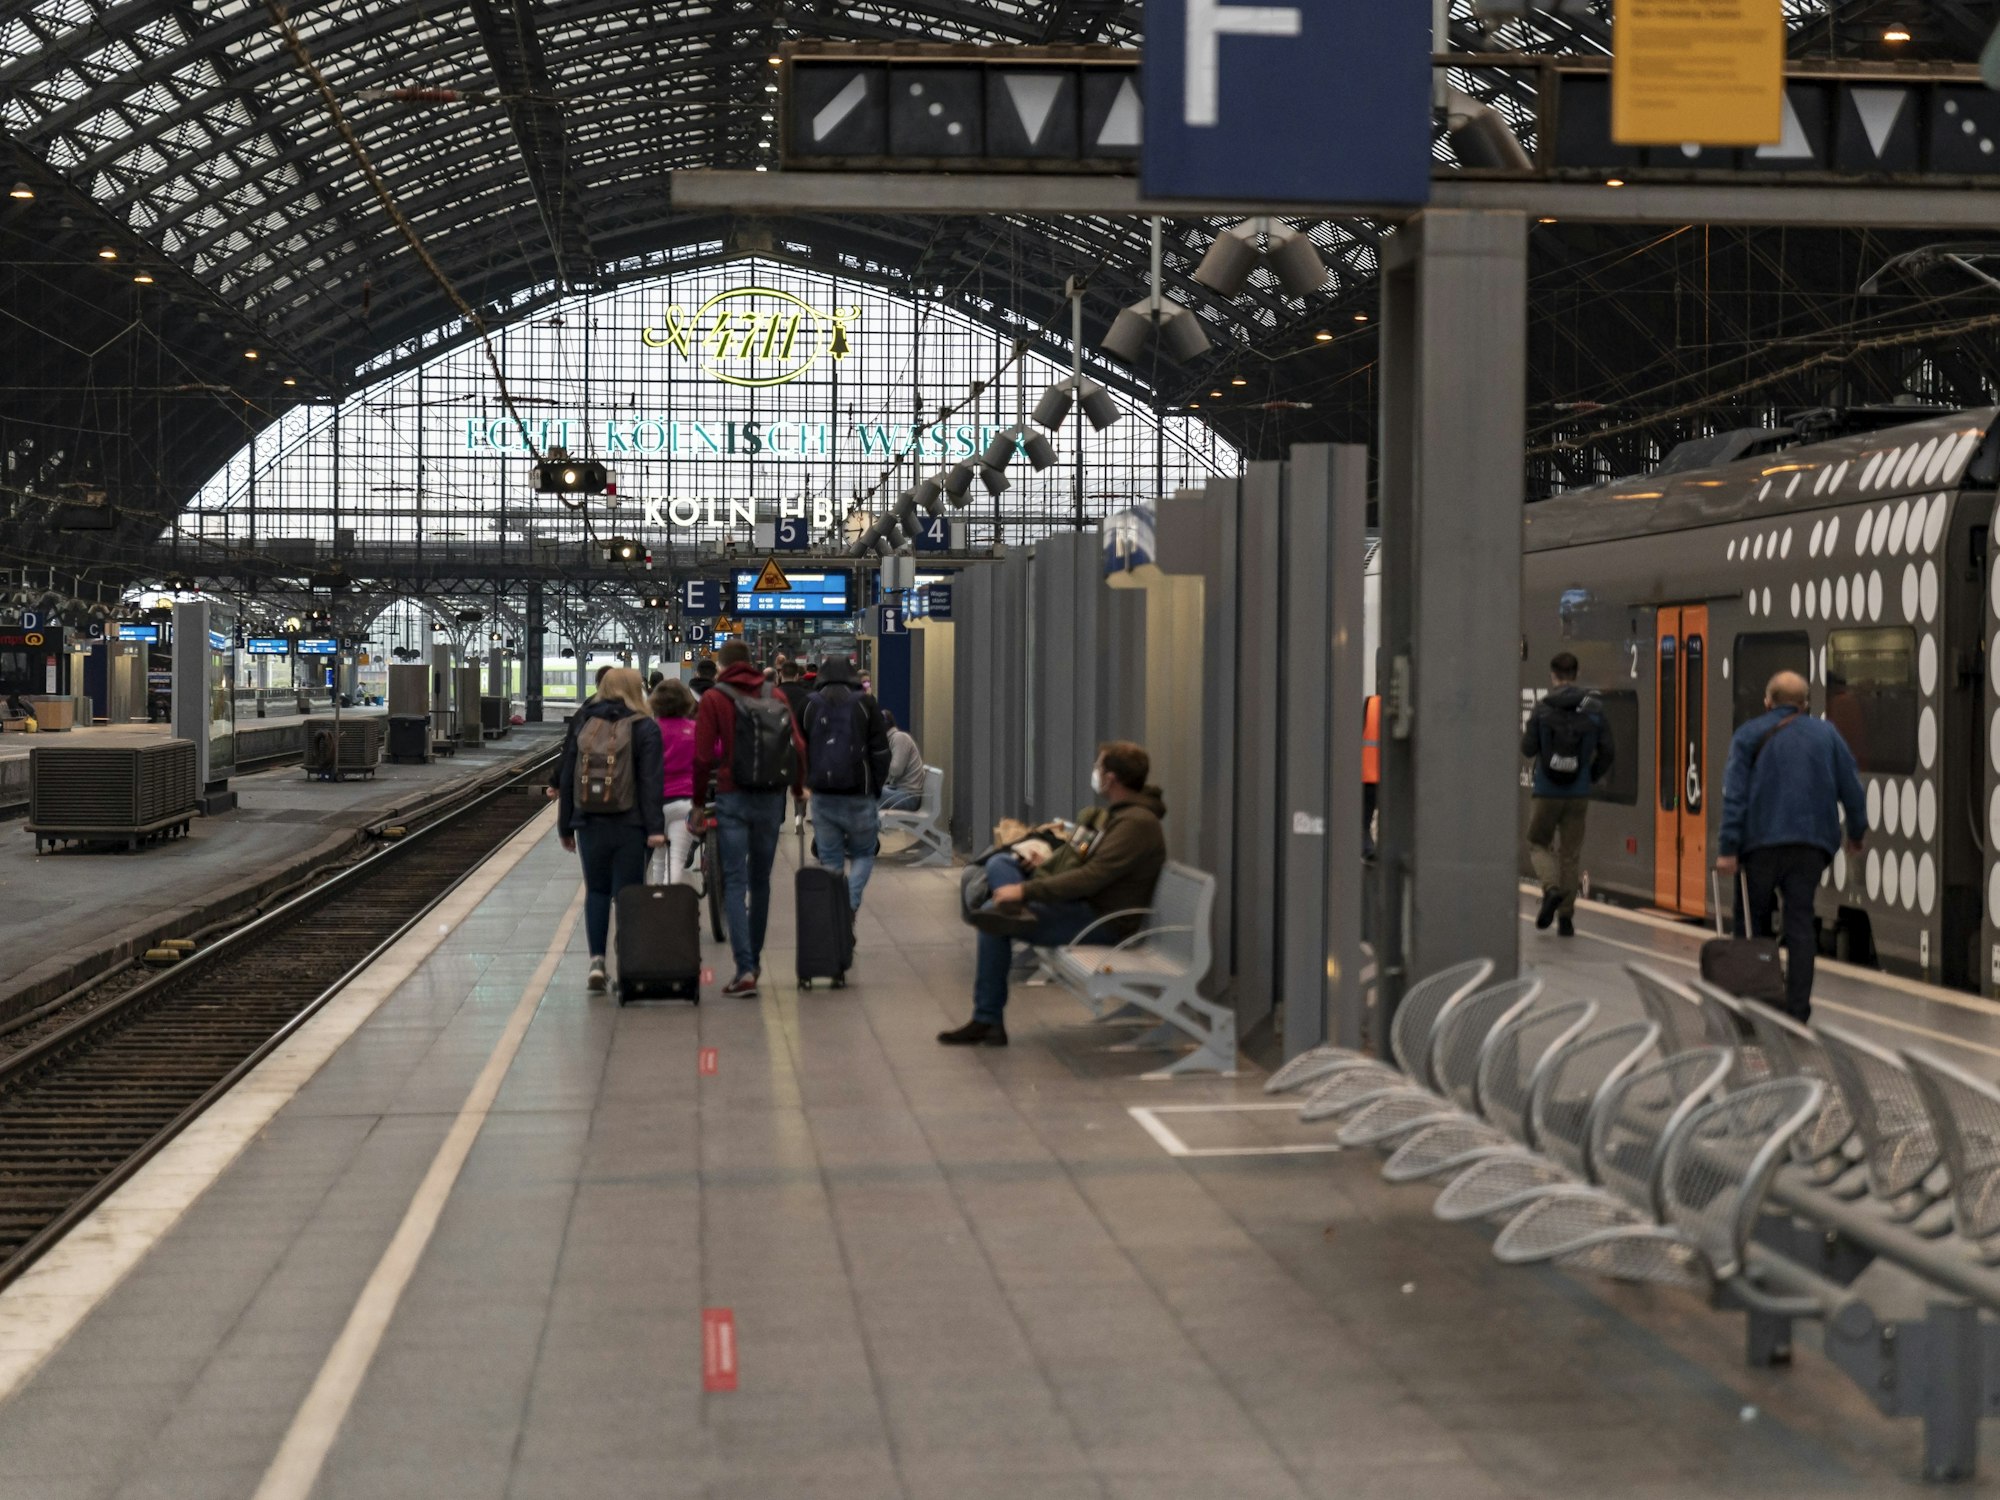 Menschen warten am Bahnsteig am Hauptbahnhof Köln auf ihren Zug. Foto von Alexander Roll, honorarfrei